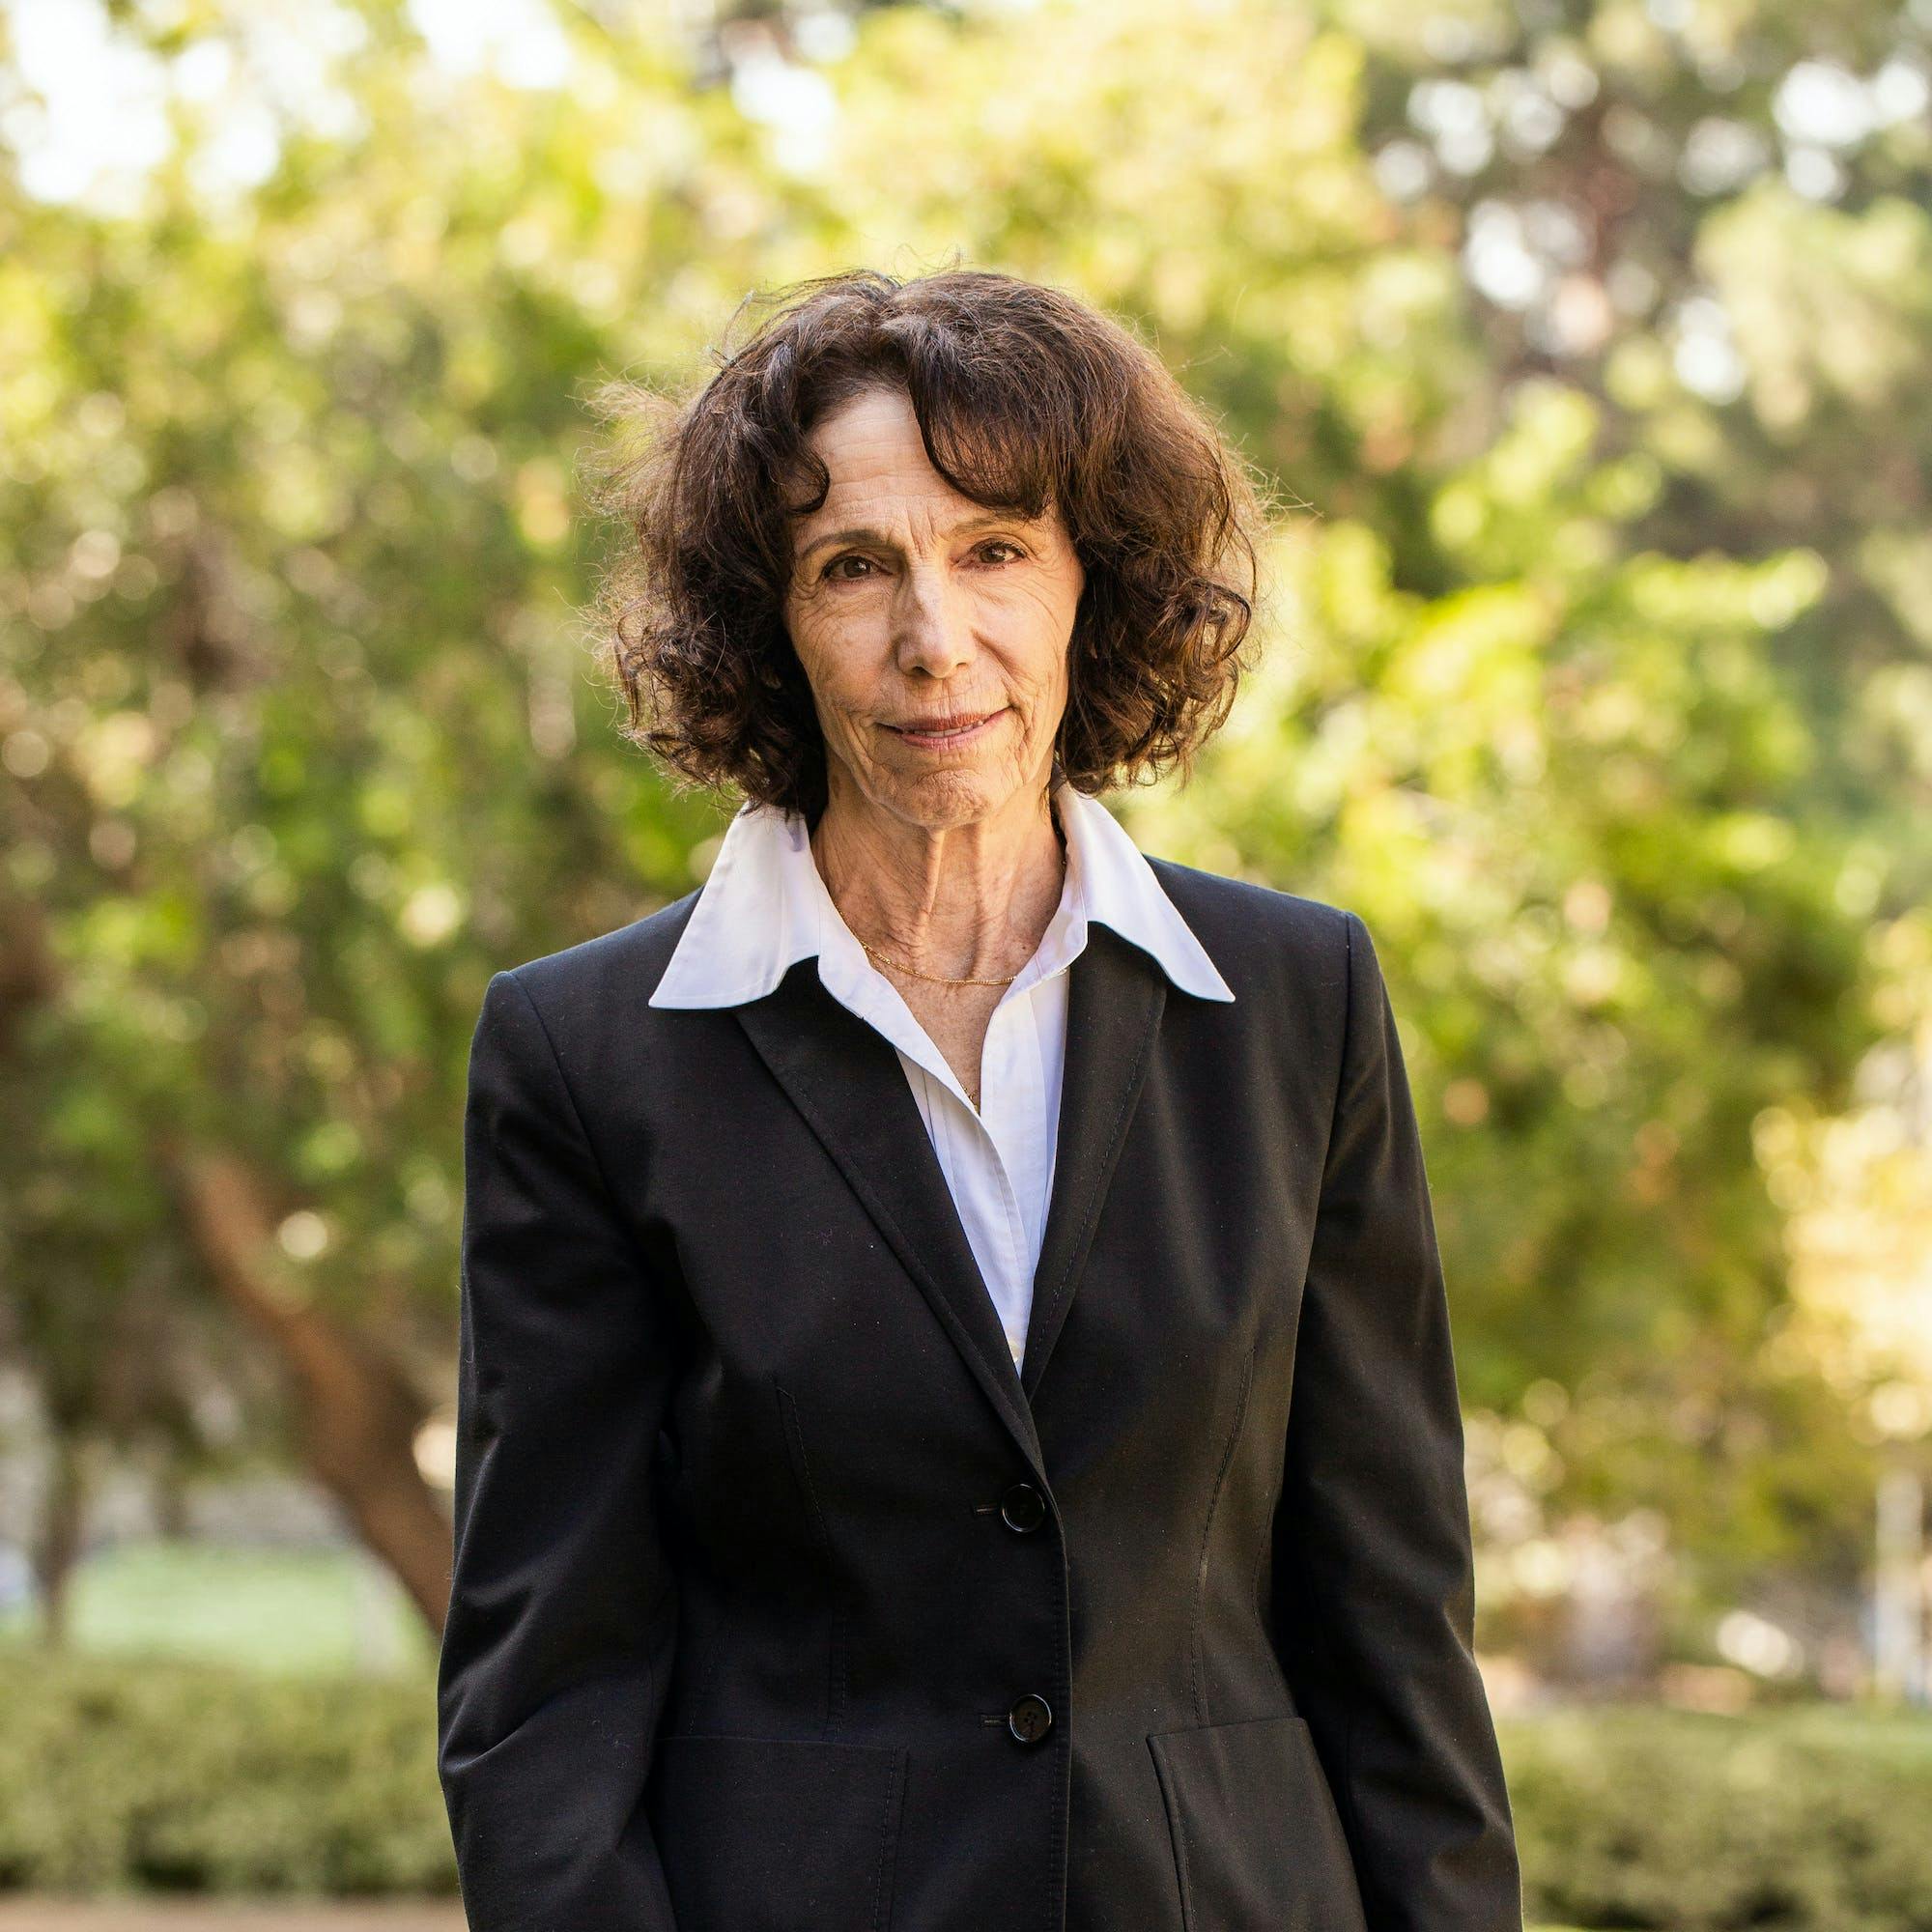 Adjunct Professor, Diane Durkin